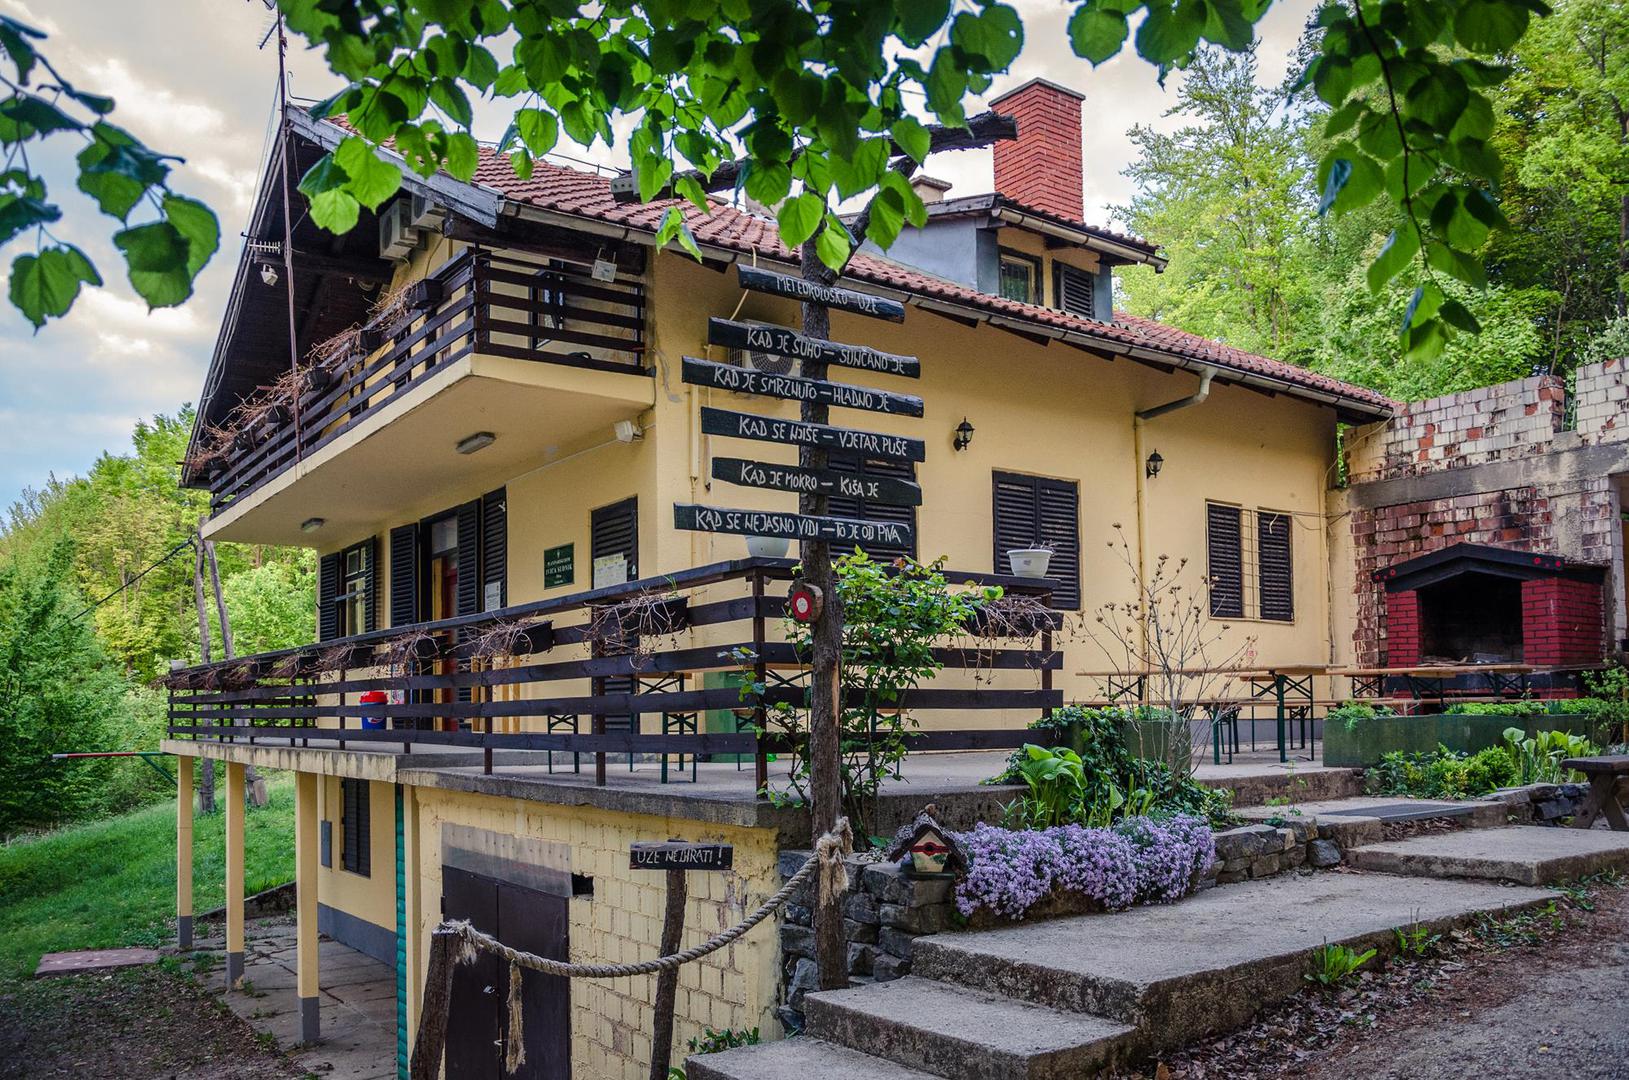 Planinarski dom “Ivica Sudnik”